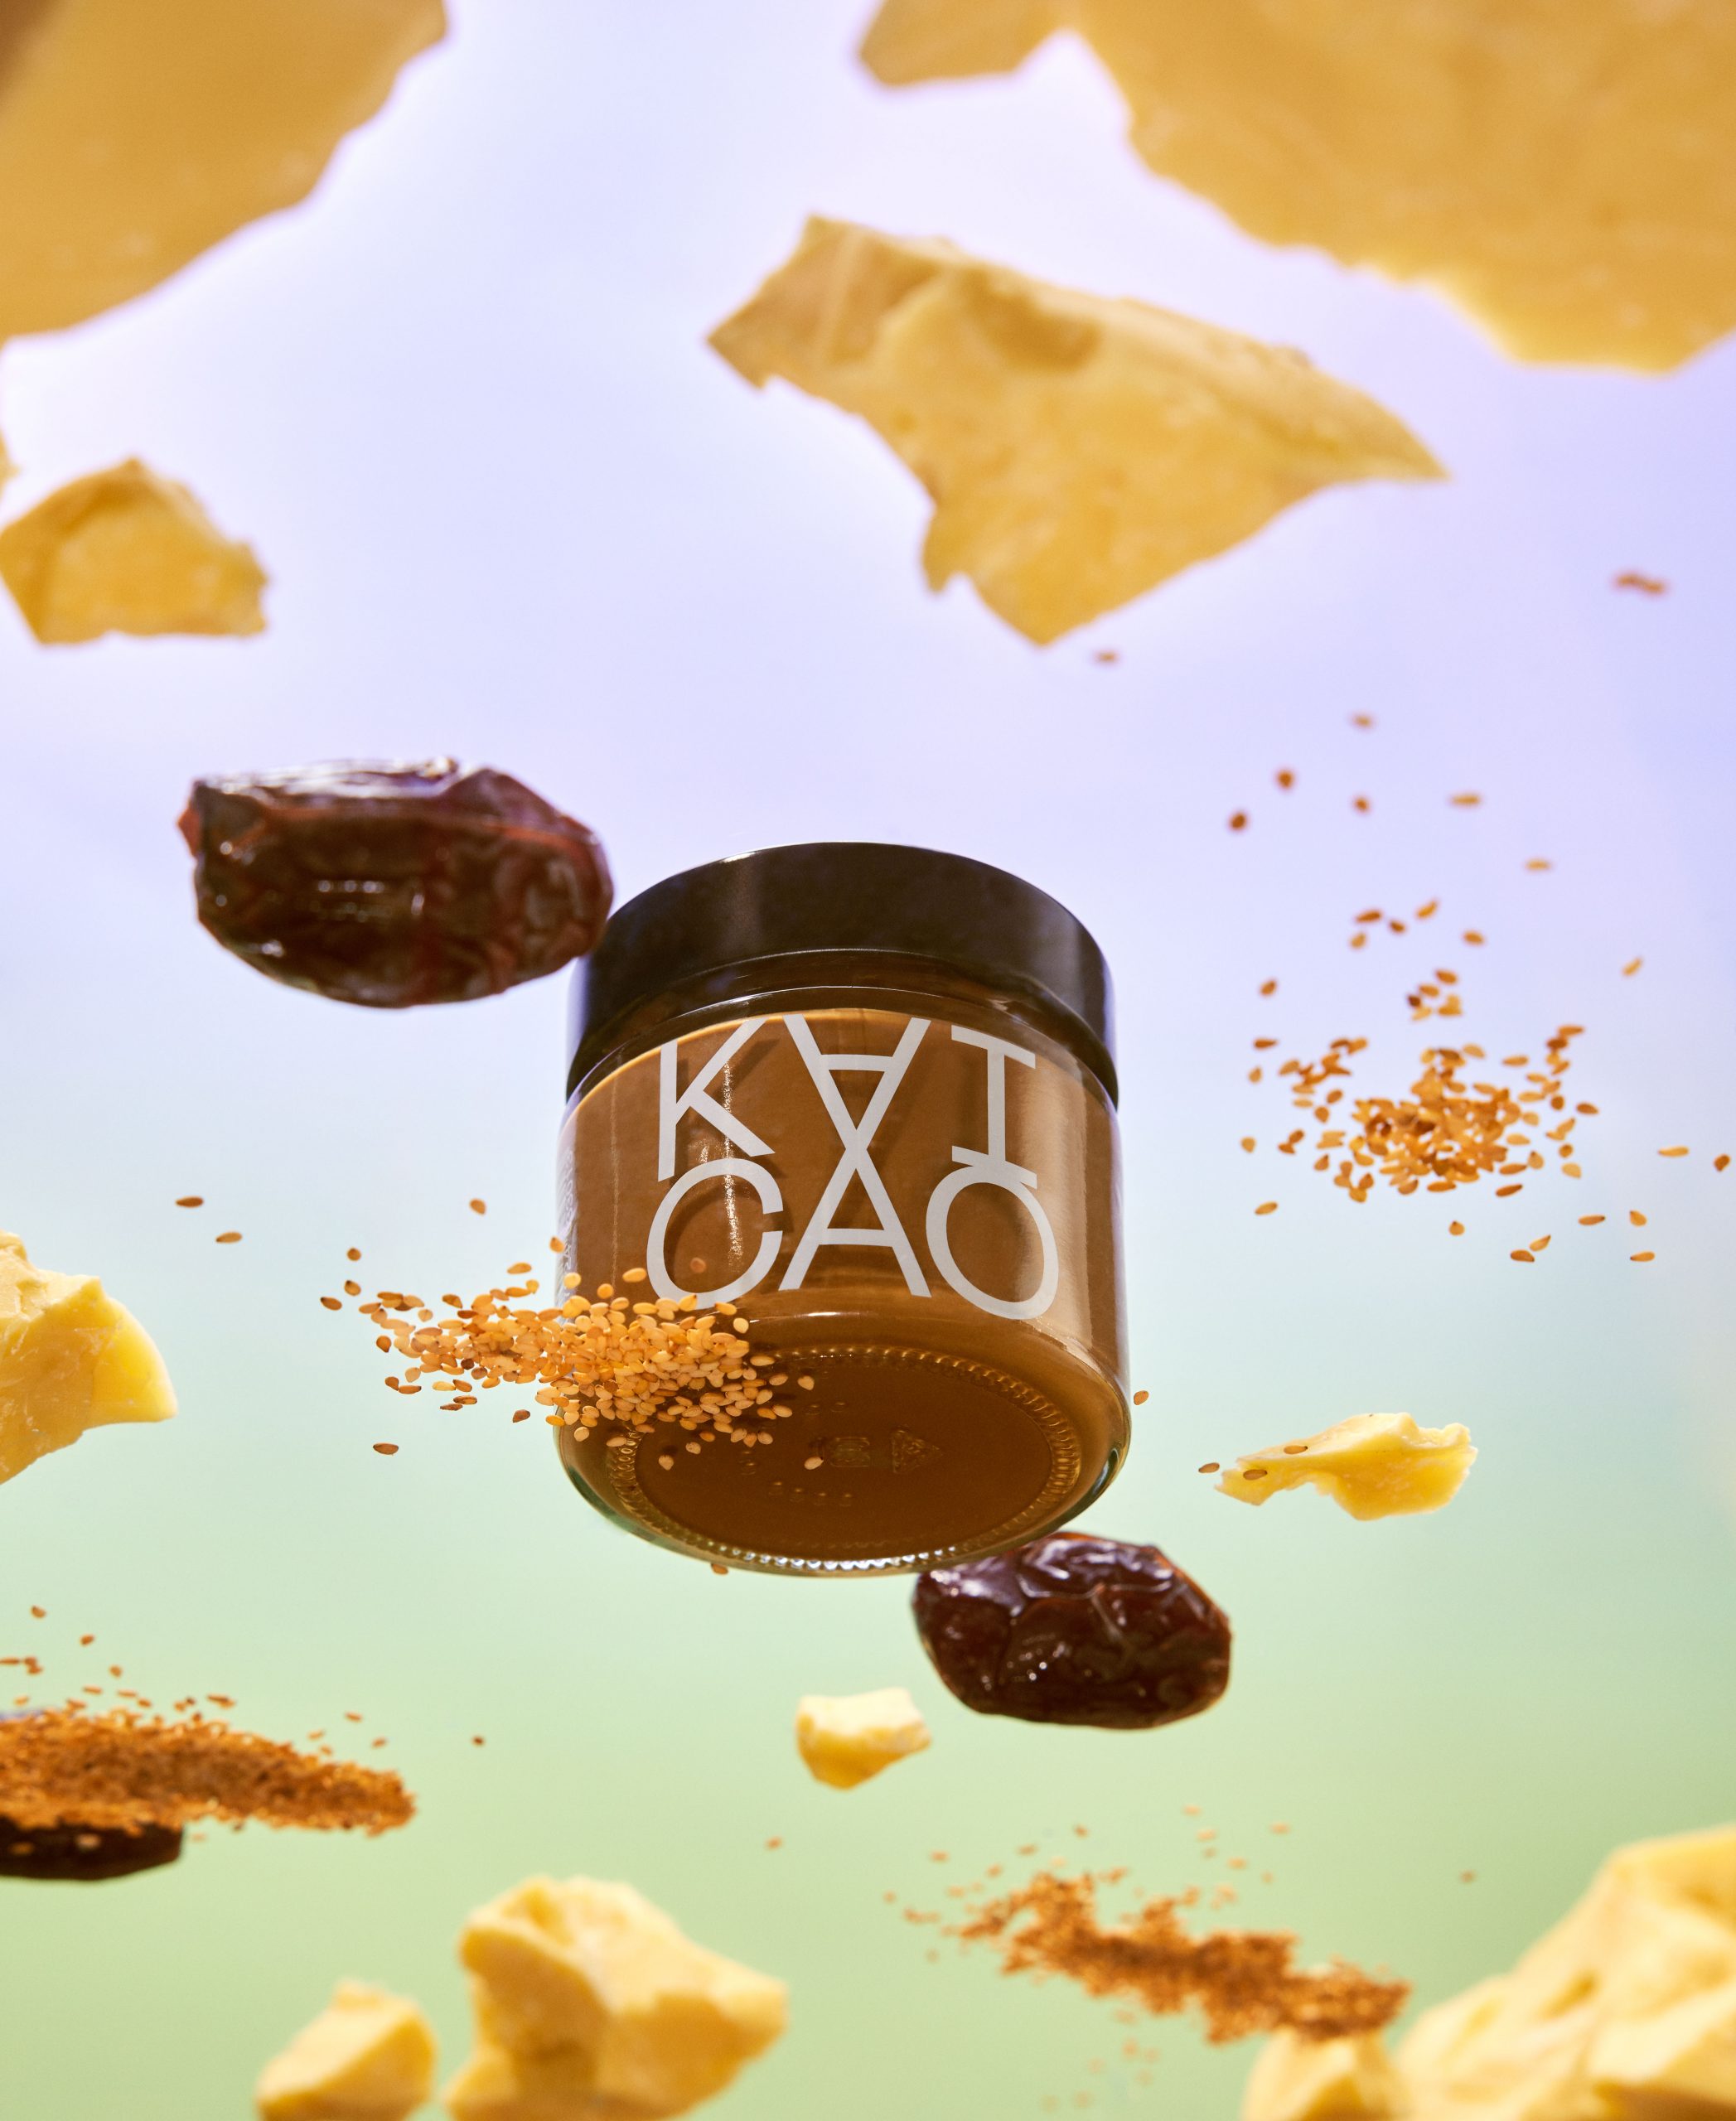 Campaña publicitaria realizada por la fotógrafa Tessa Dóniga junto a Enri Mür Studio para la crema de cacao KAI CAO.